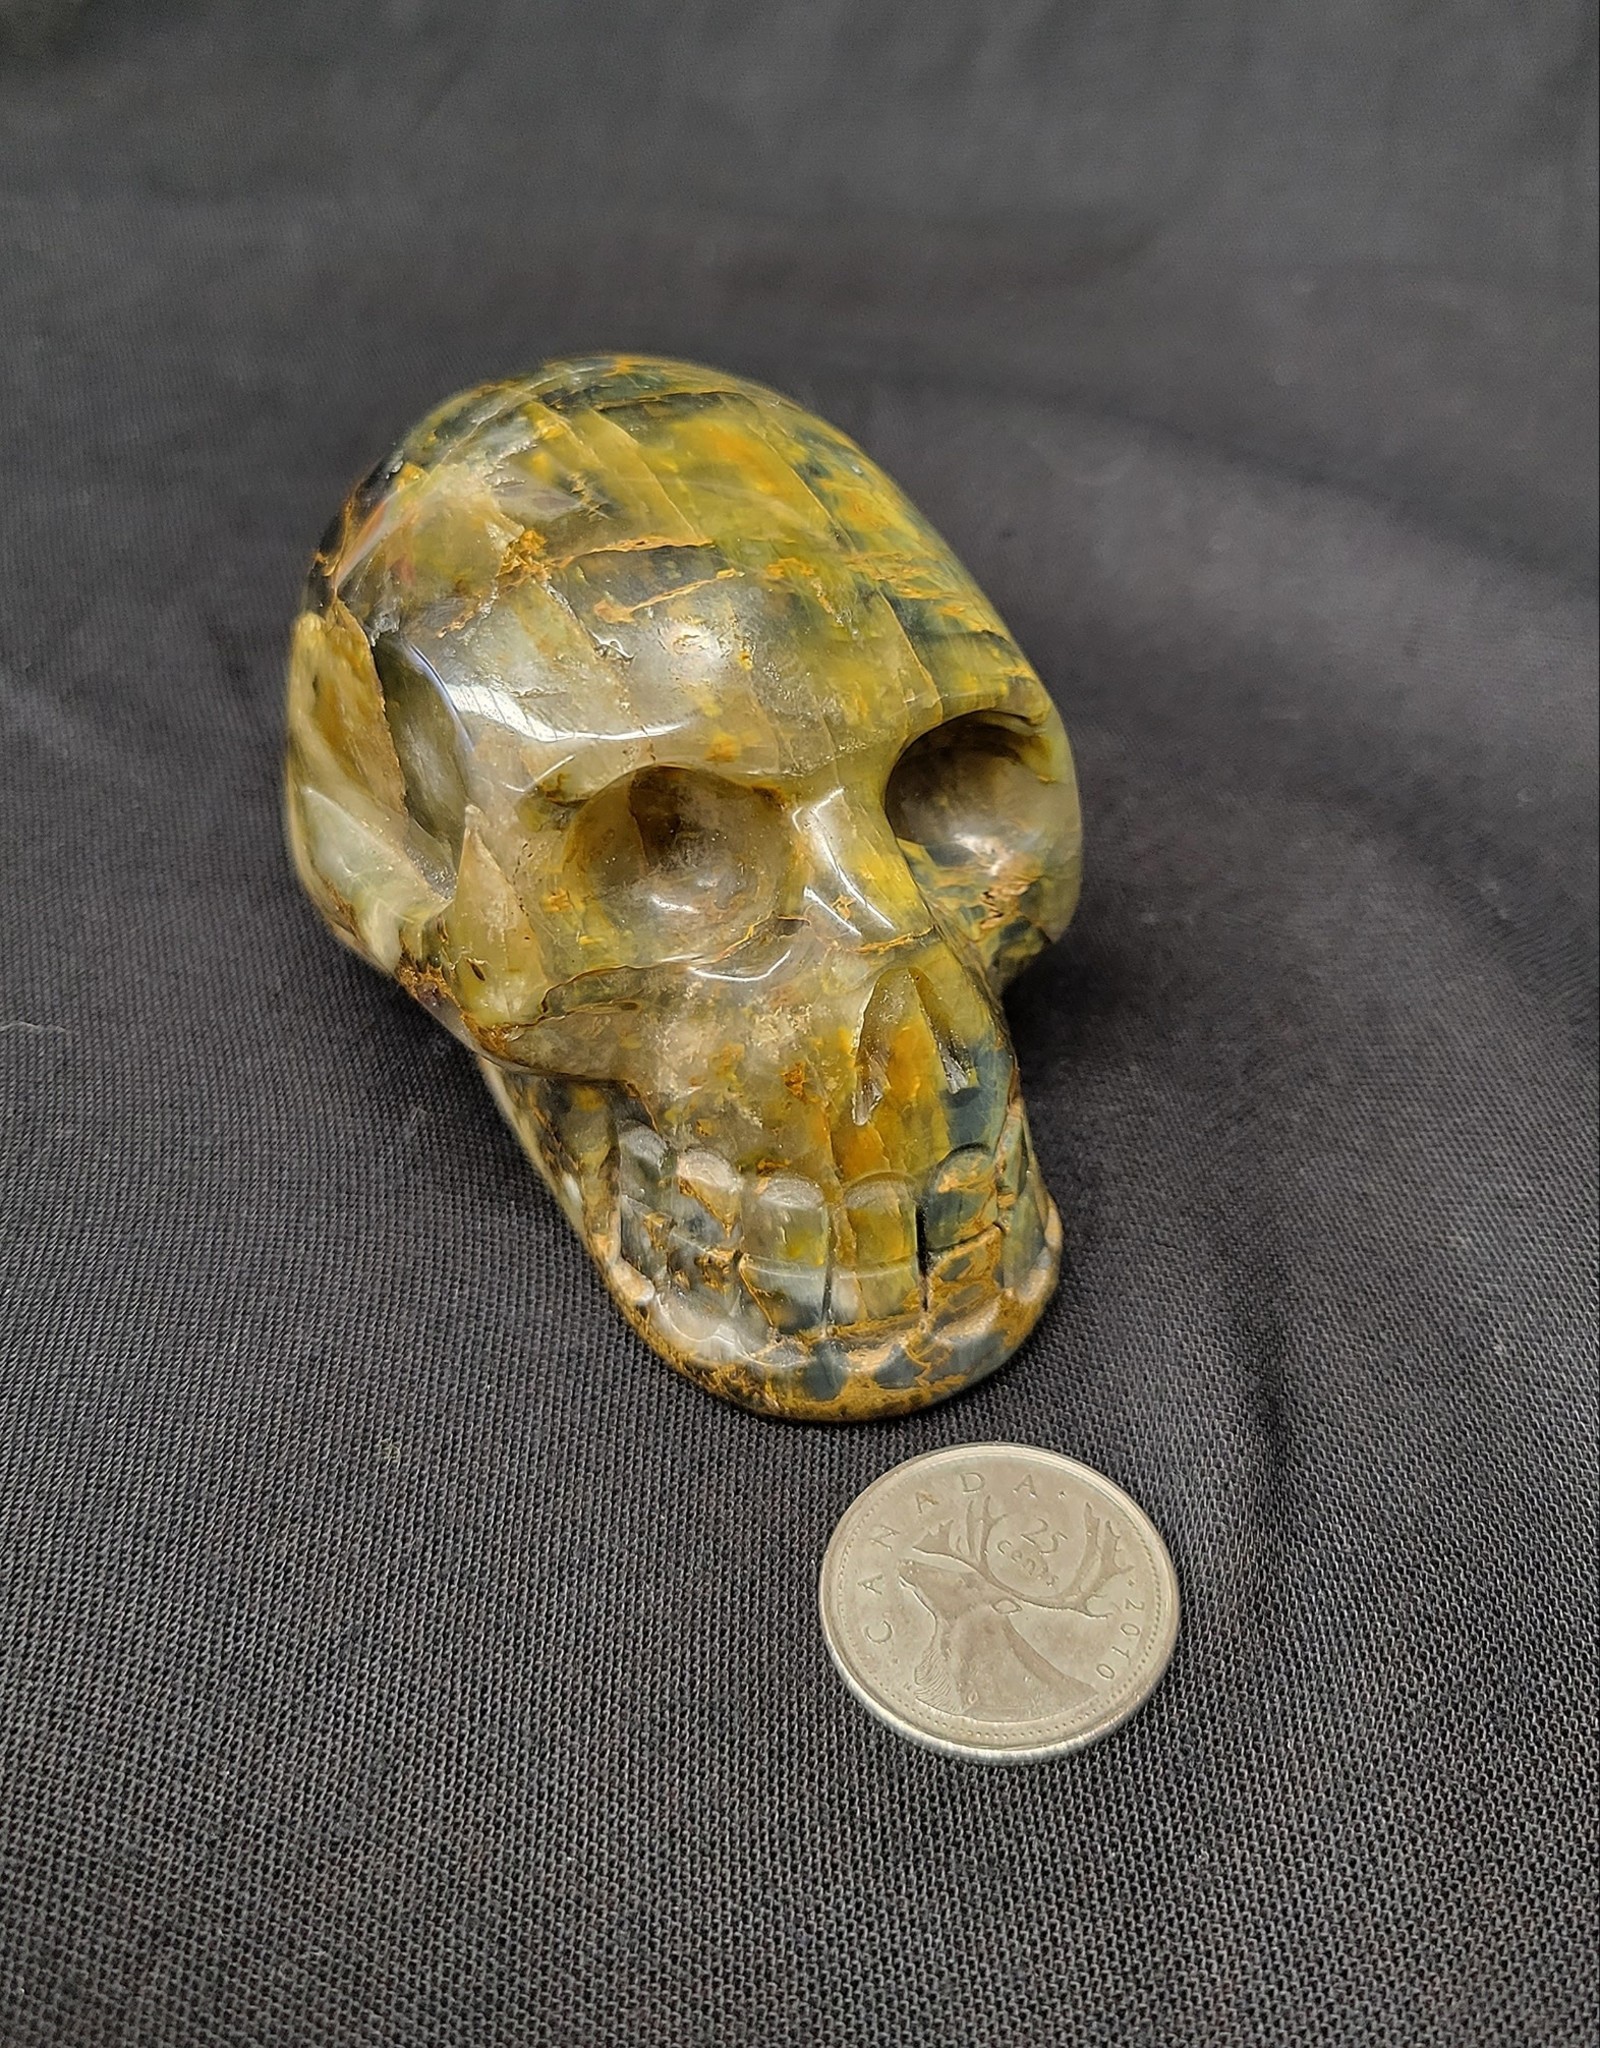 Pietersite Skull 3"